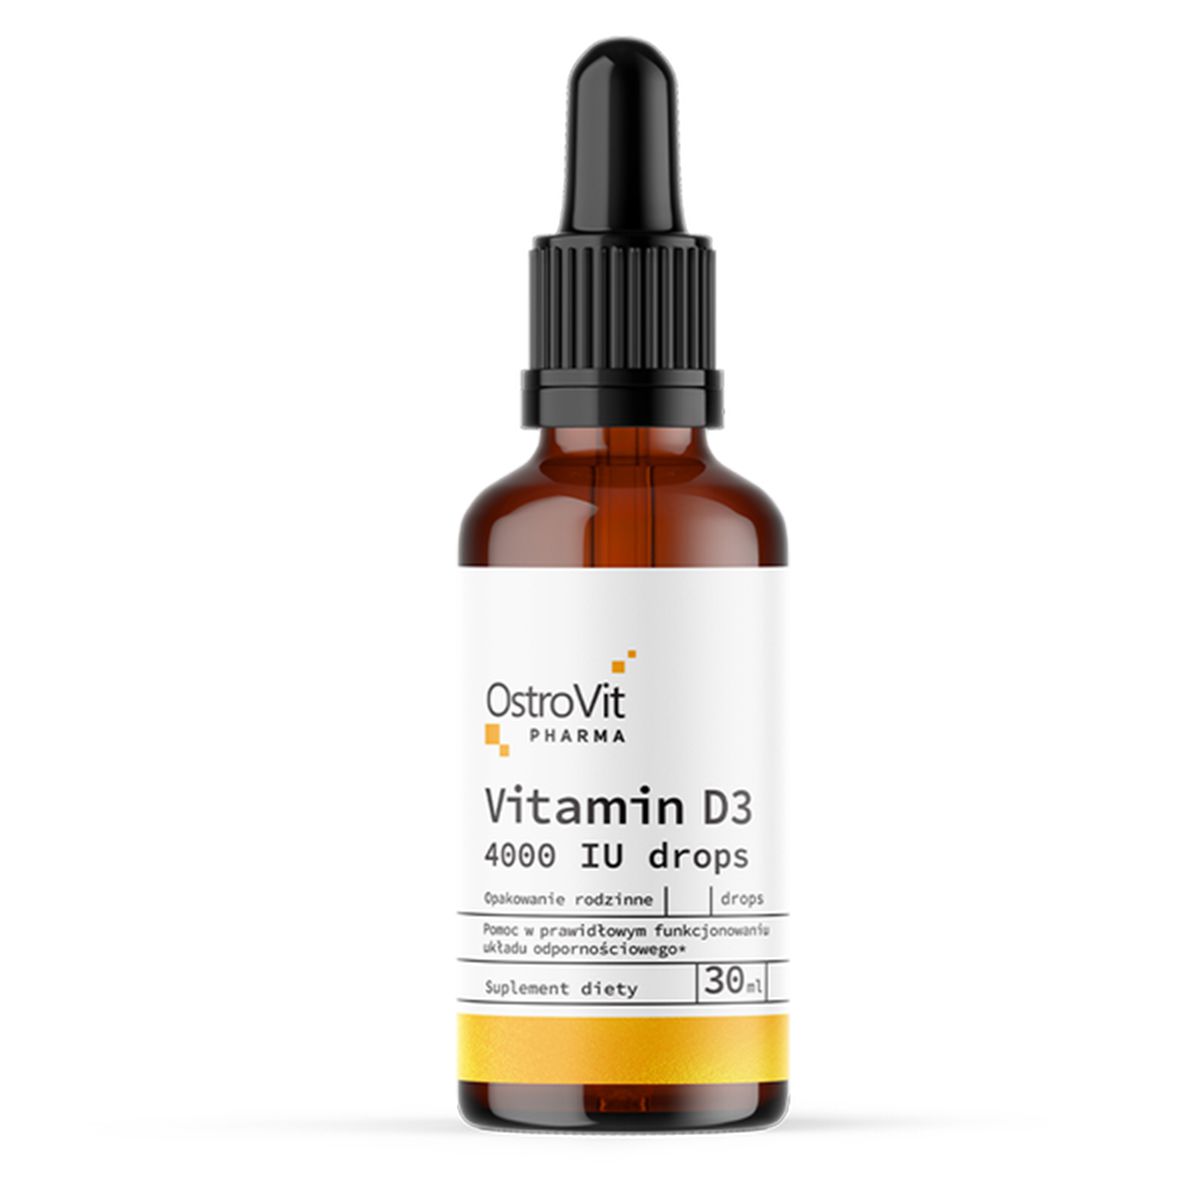 Ostrovit Vitamin D3 4000 K2 kết hợp hai dưỡng chất nào và tác dụng của chúng là gì?
